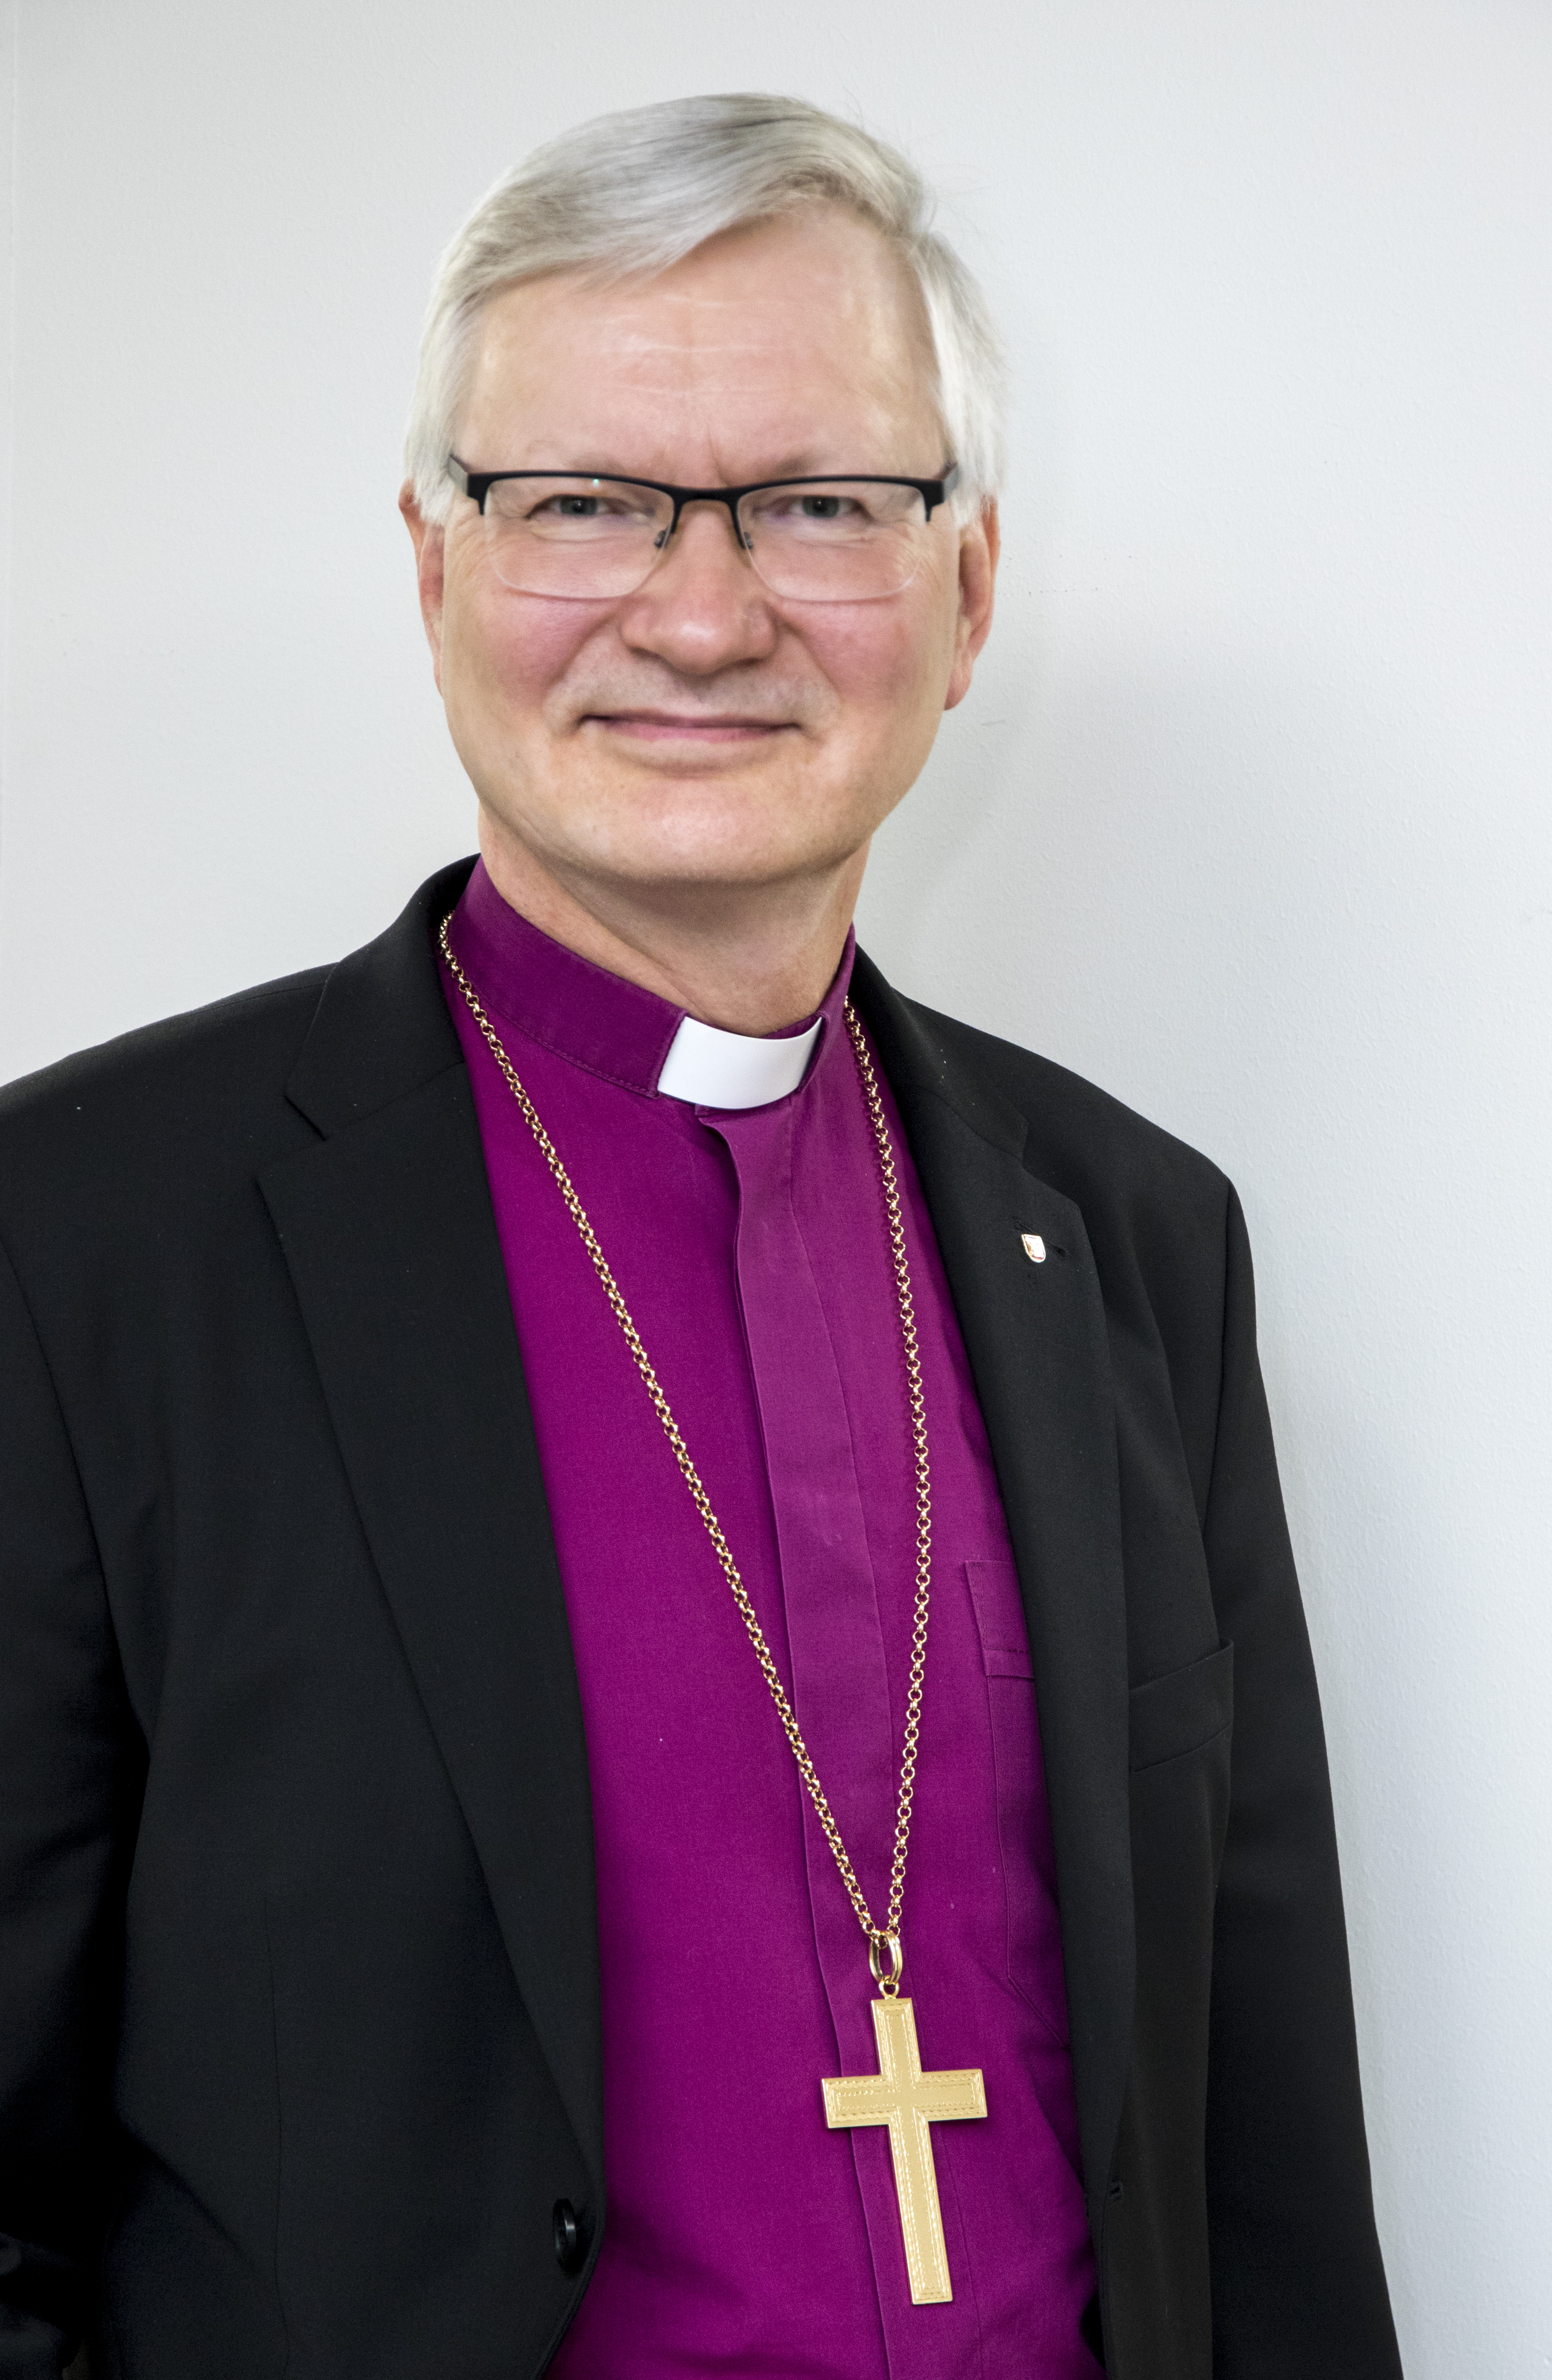 Silmälasipäinen ja harmaahiuksinen piispa viininpunaisessa paidassa ja suuri ristikoru kaulallaan roikkuen.